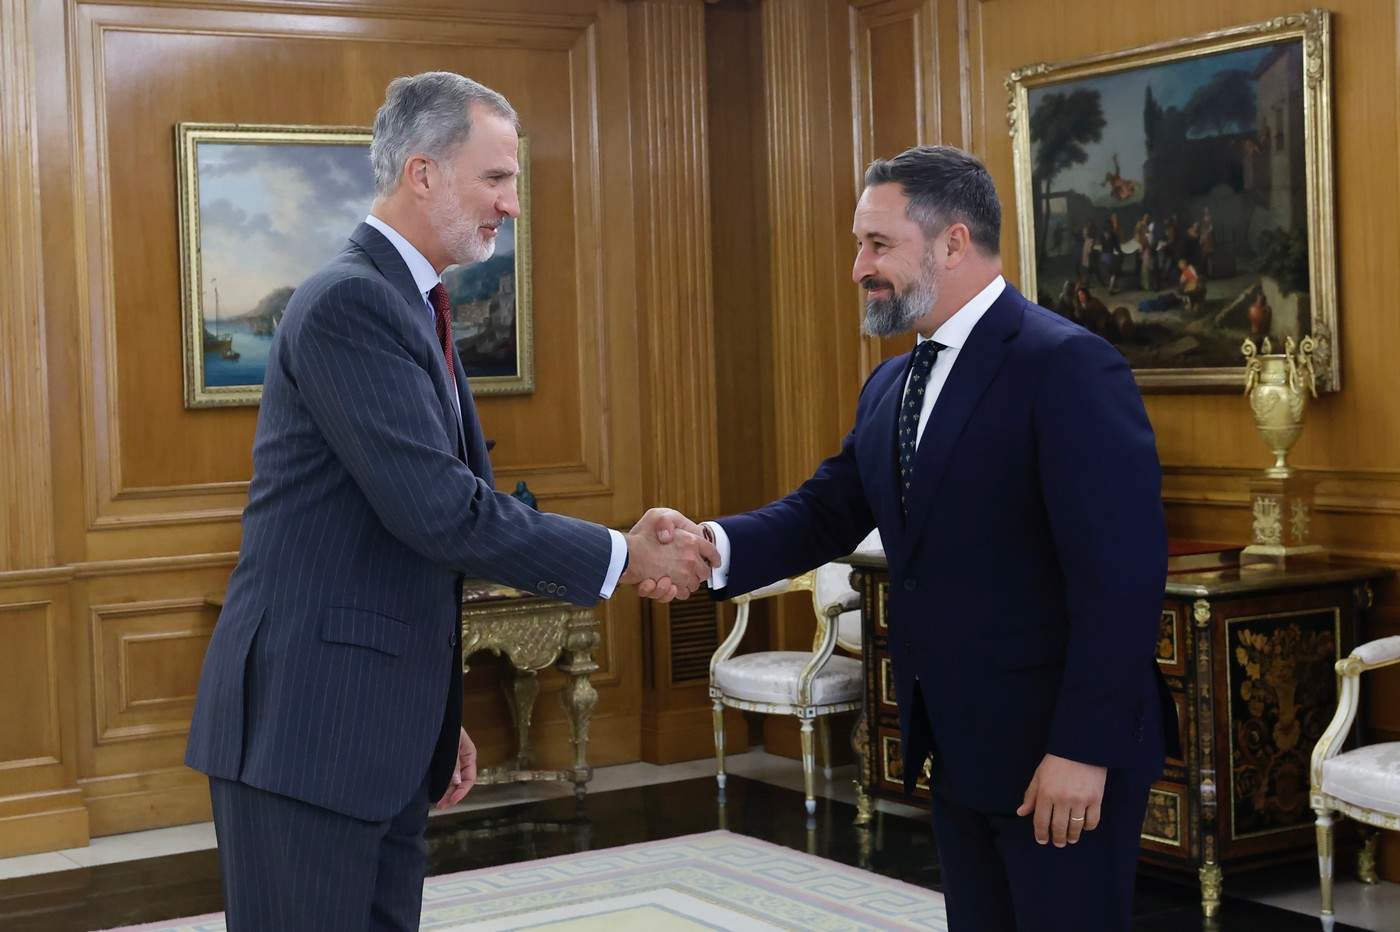 Su Majestad el Rey recibe el saludo del representante de VOX, Don Santiago Abascal Conde

Palacio de La Zarzuela. Madrid, 02.10.2023